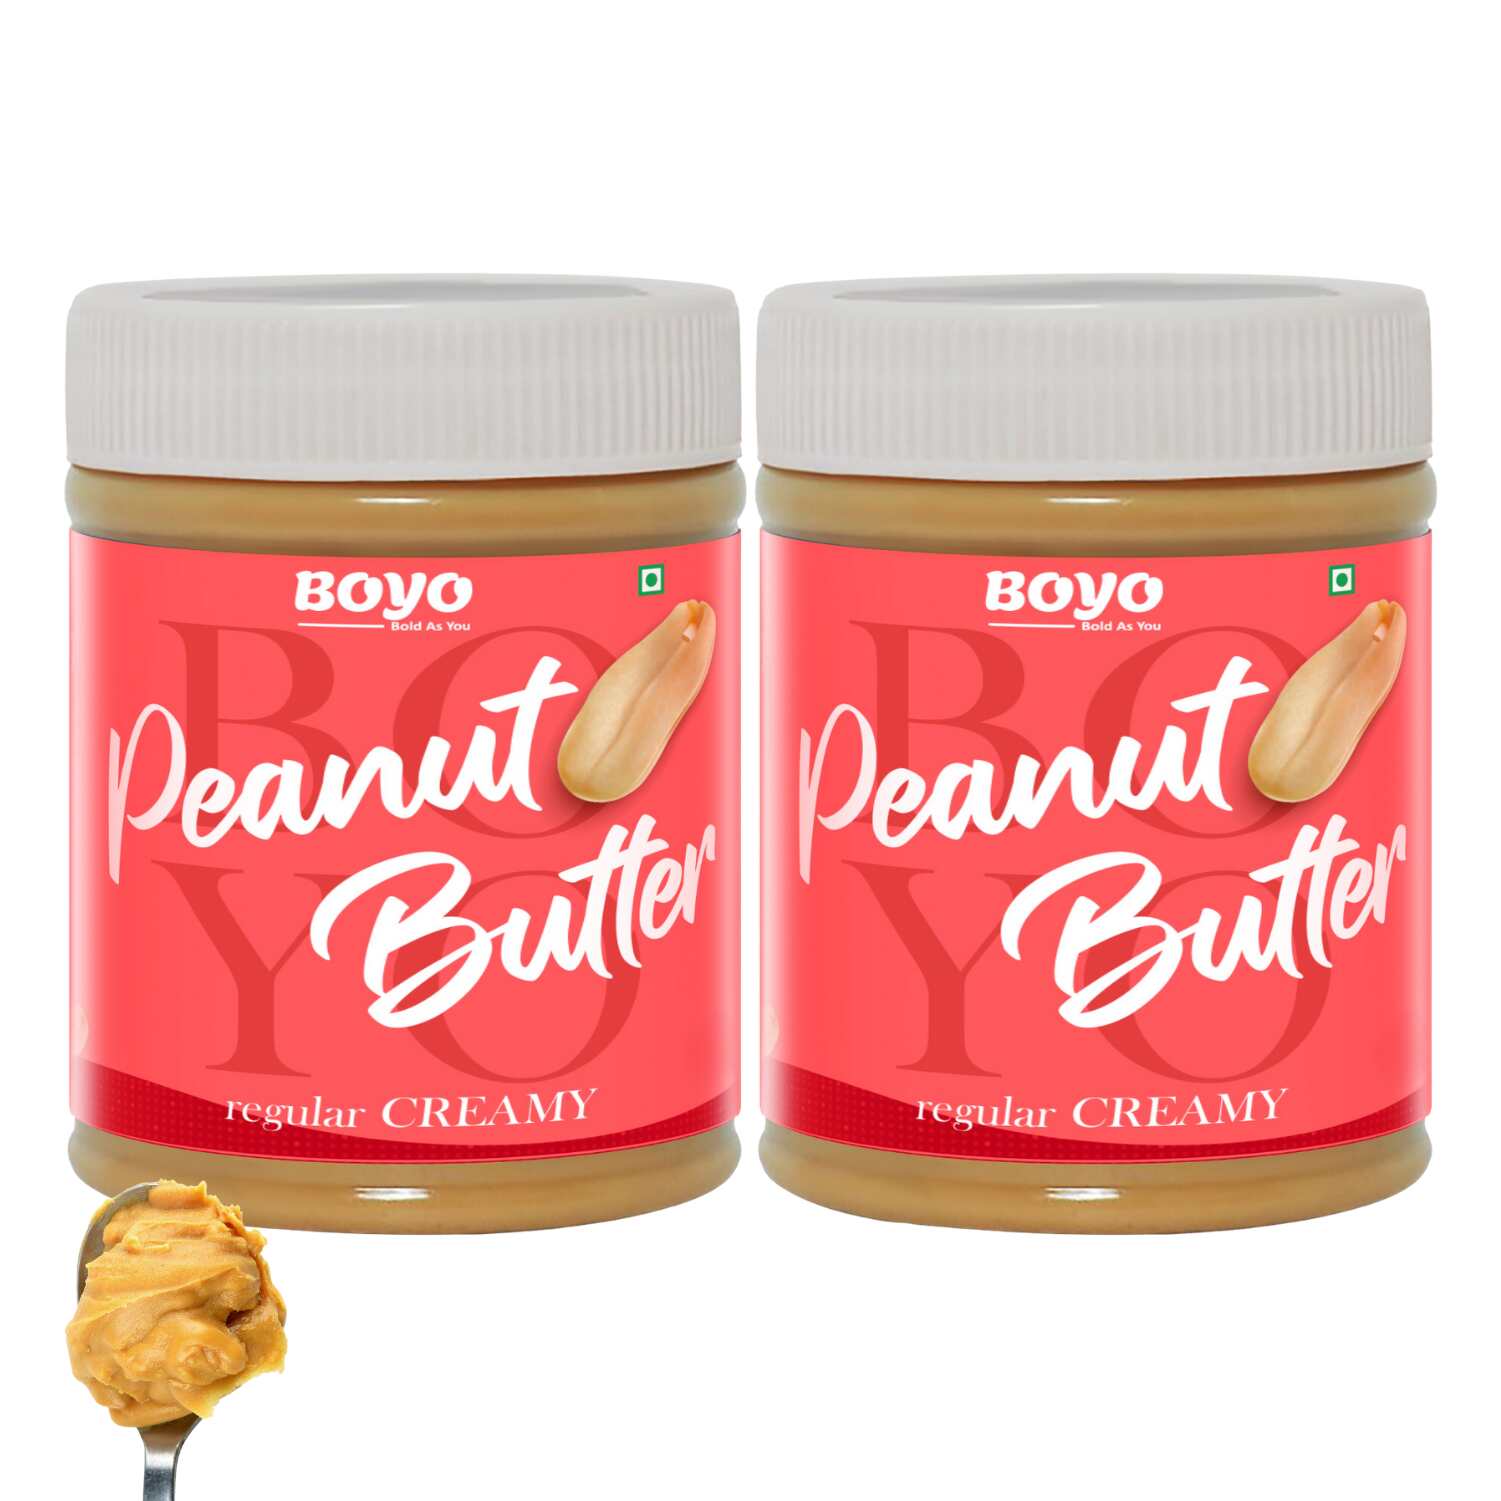 Peanut Butter Combo Regular Creamy 340g Each - Pack of 2